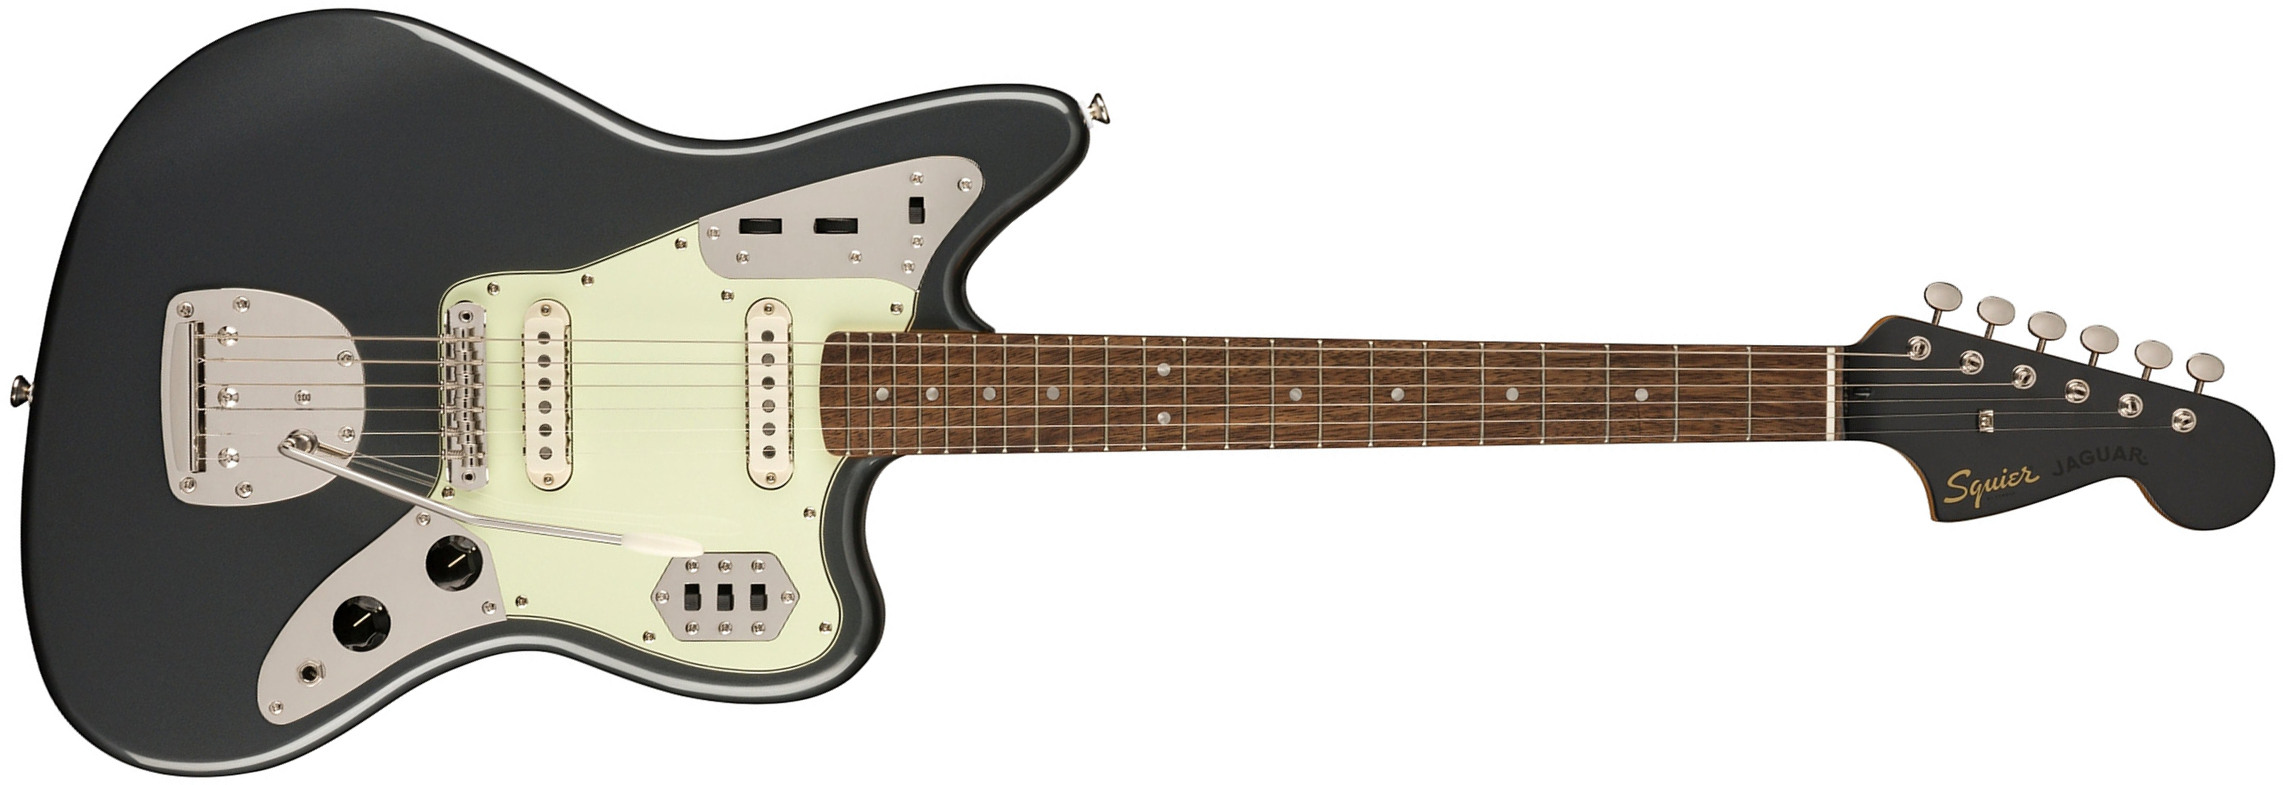 Squier Jaguar 60s Classic Vibe Fsr Ltd 2s Trem Lau - Charcoal Frost Metallic - Retro rock electric guitar - Main picture